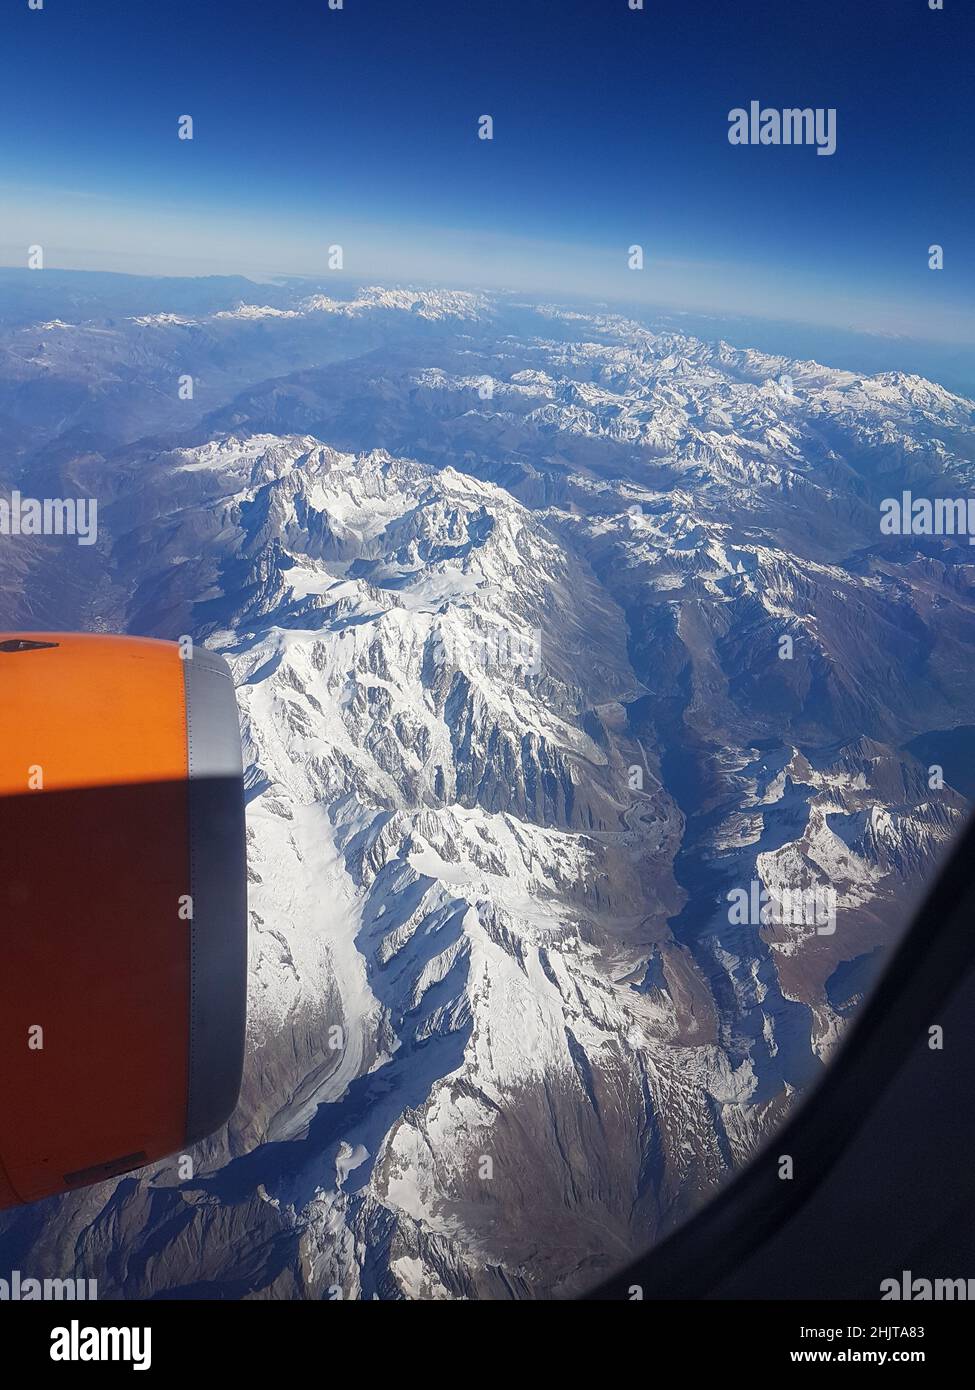 La catena principale della catena montuosa delle Alpi in Europa, vista da un moderno jet commerciale a quota di crociera Foto Stock